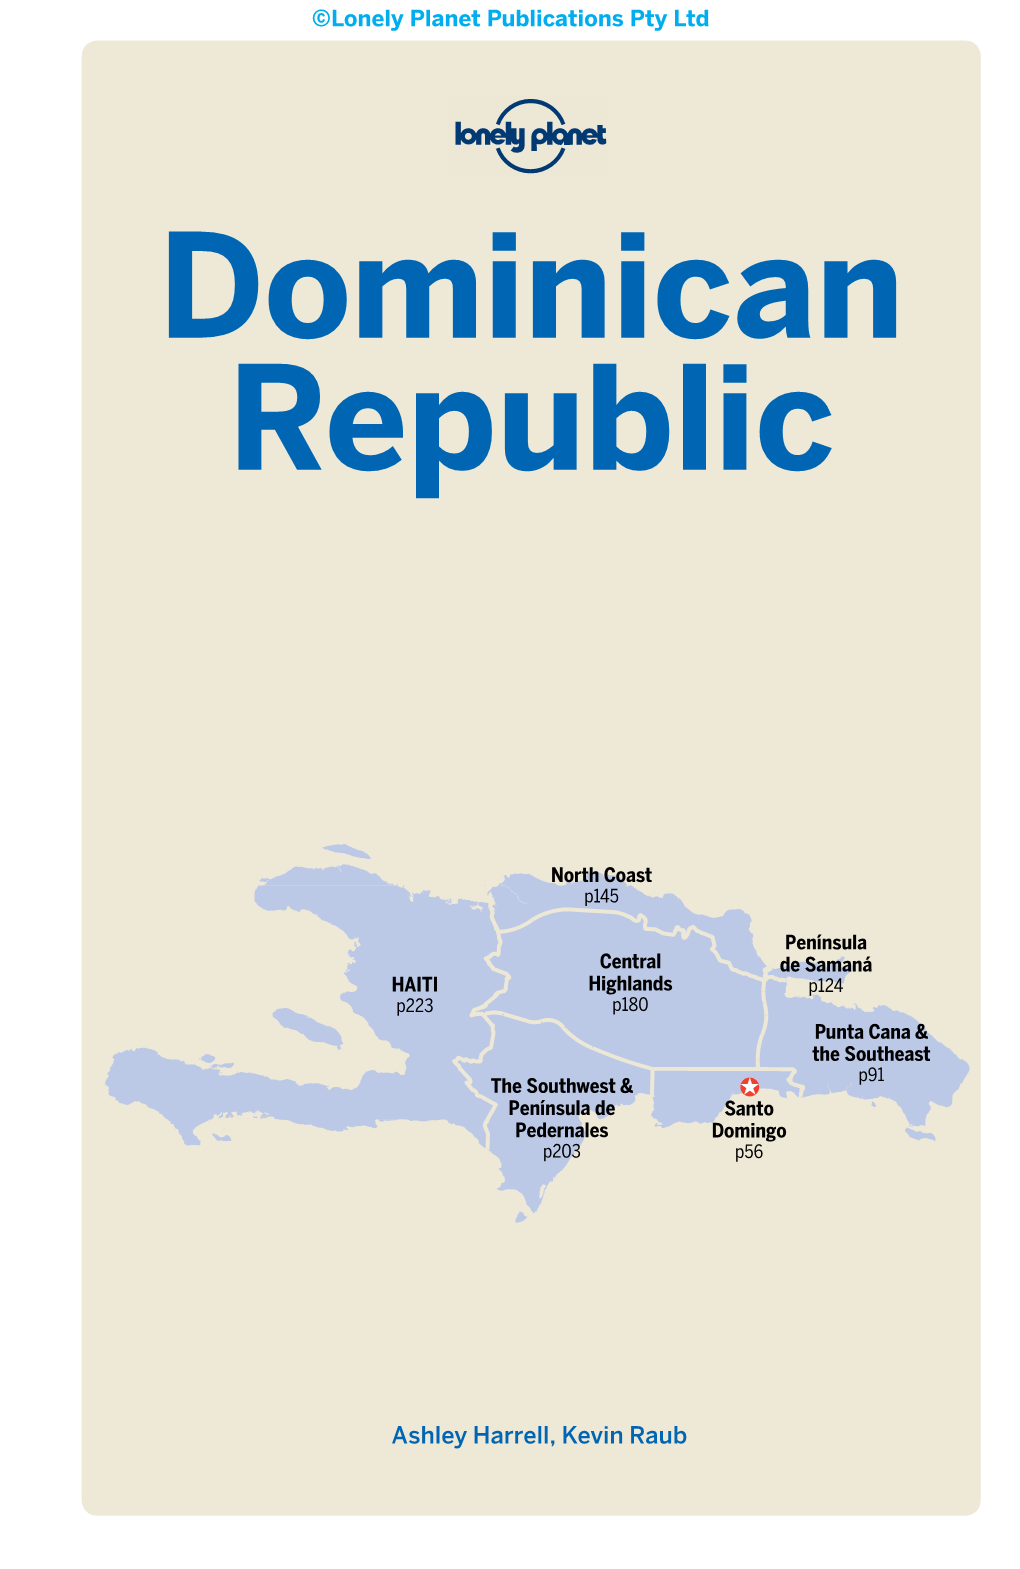 Dominican Republic 7